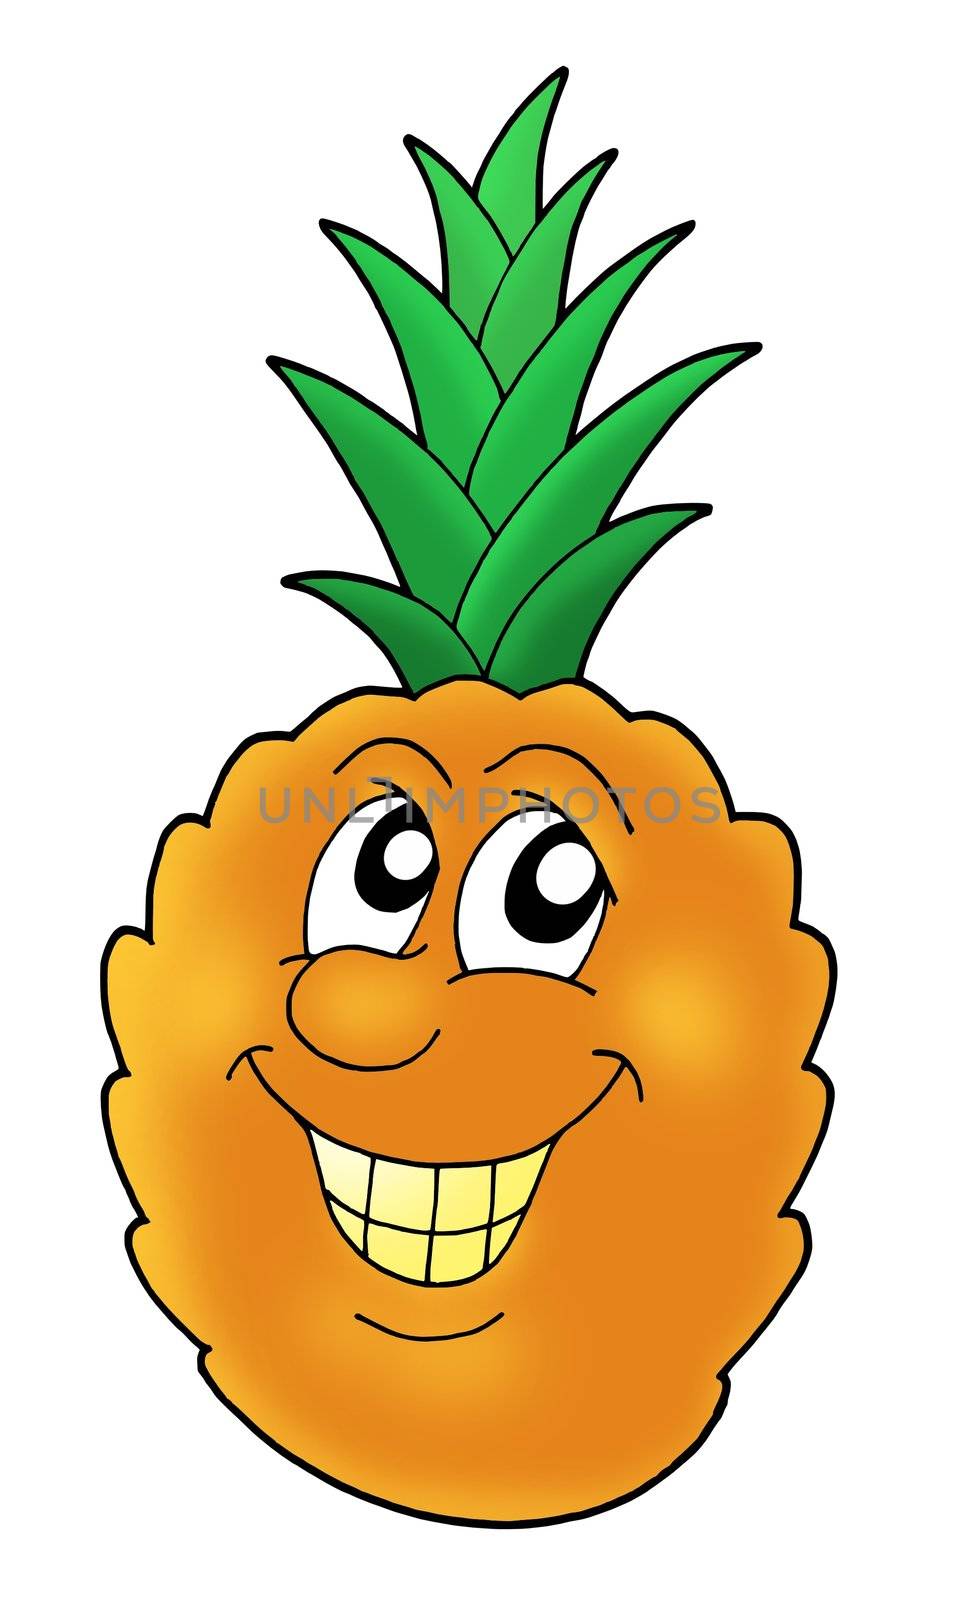 Smiling orange pineapple - color illustration.